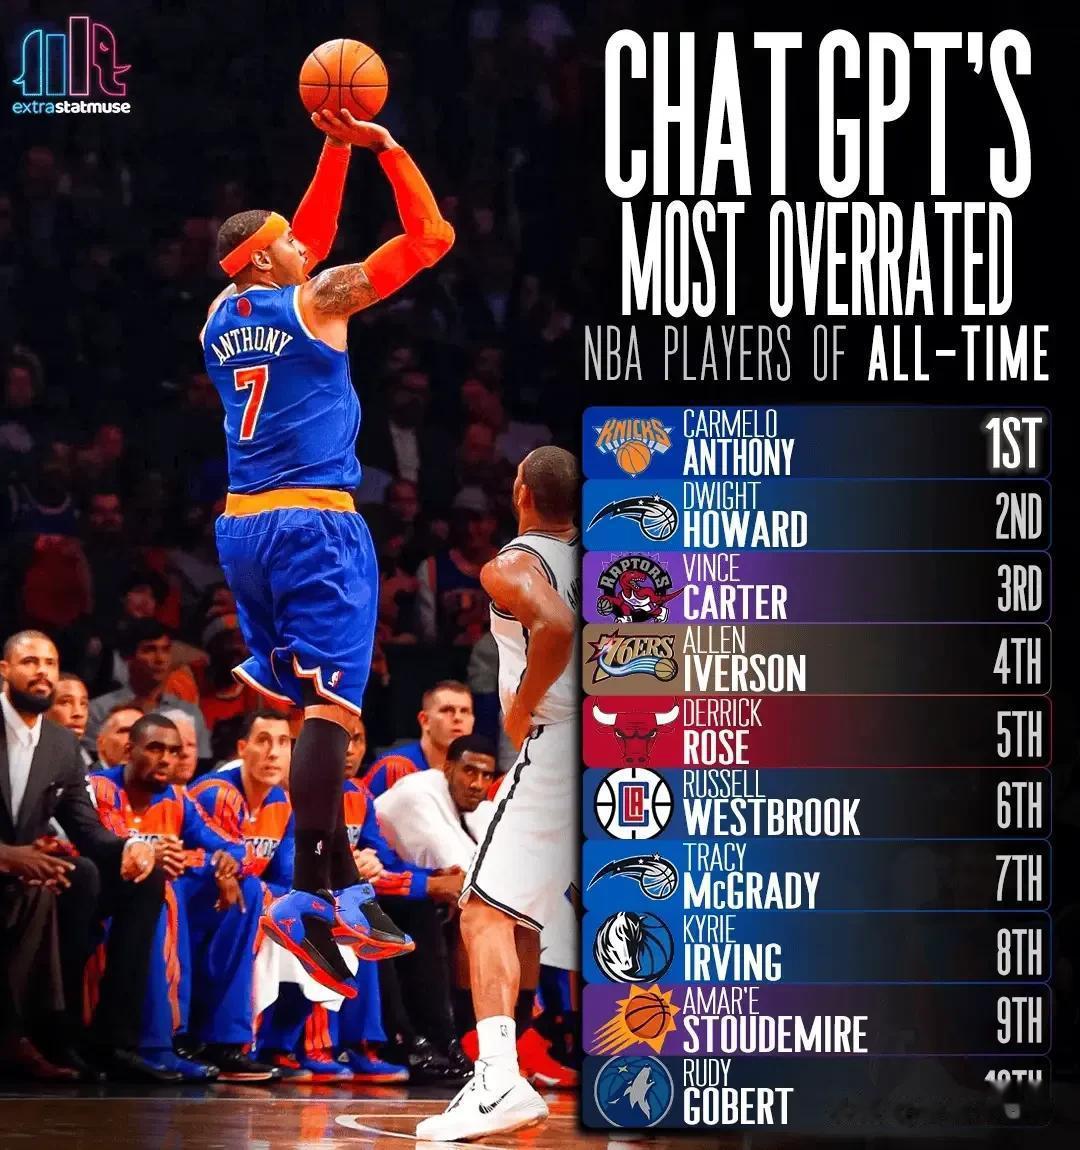 美媒评选:  NBA历史上最被高估的球员前十名，大家觉得是否合理？

1、安东尼(1)